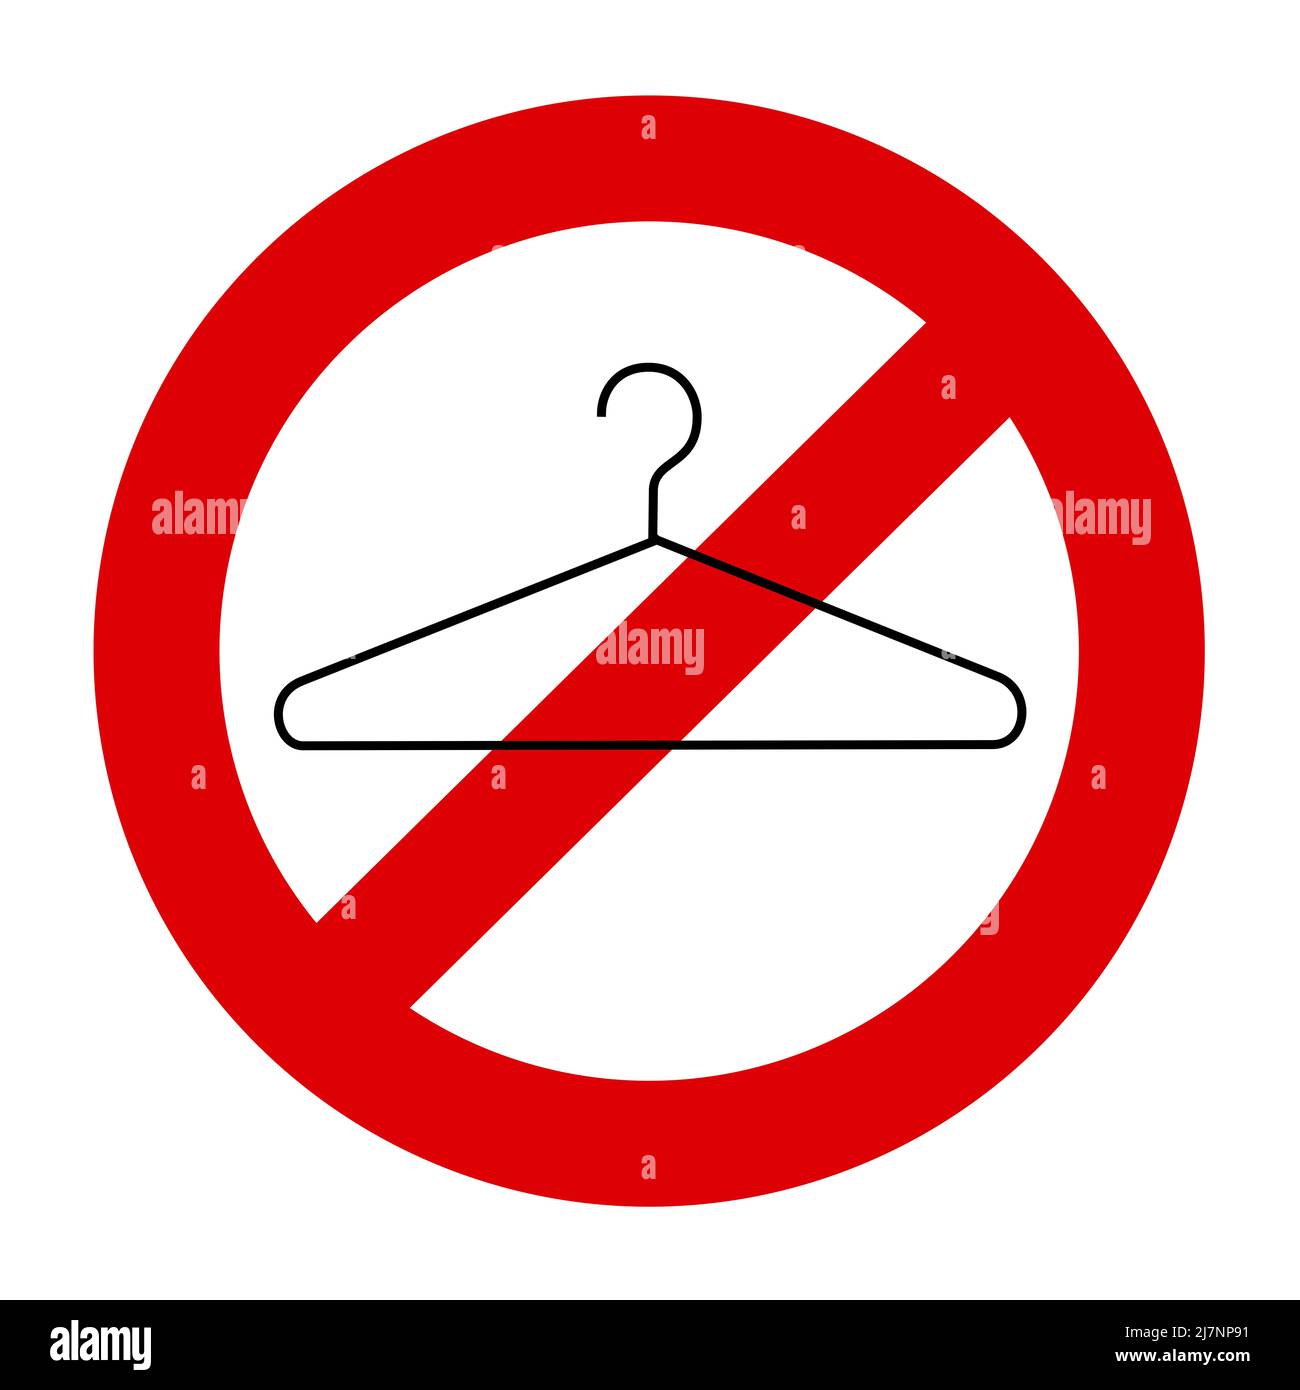 Kleiderbügel als Metapher für selbst verursachte Abtreibung. Abbruch wird verboten, verboten, illegal und abgebrochen. Vektordarstellung des Symbols, das auf Whi isoliert ist Stockfoto